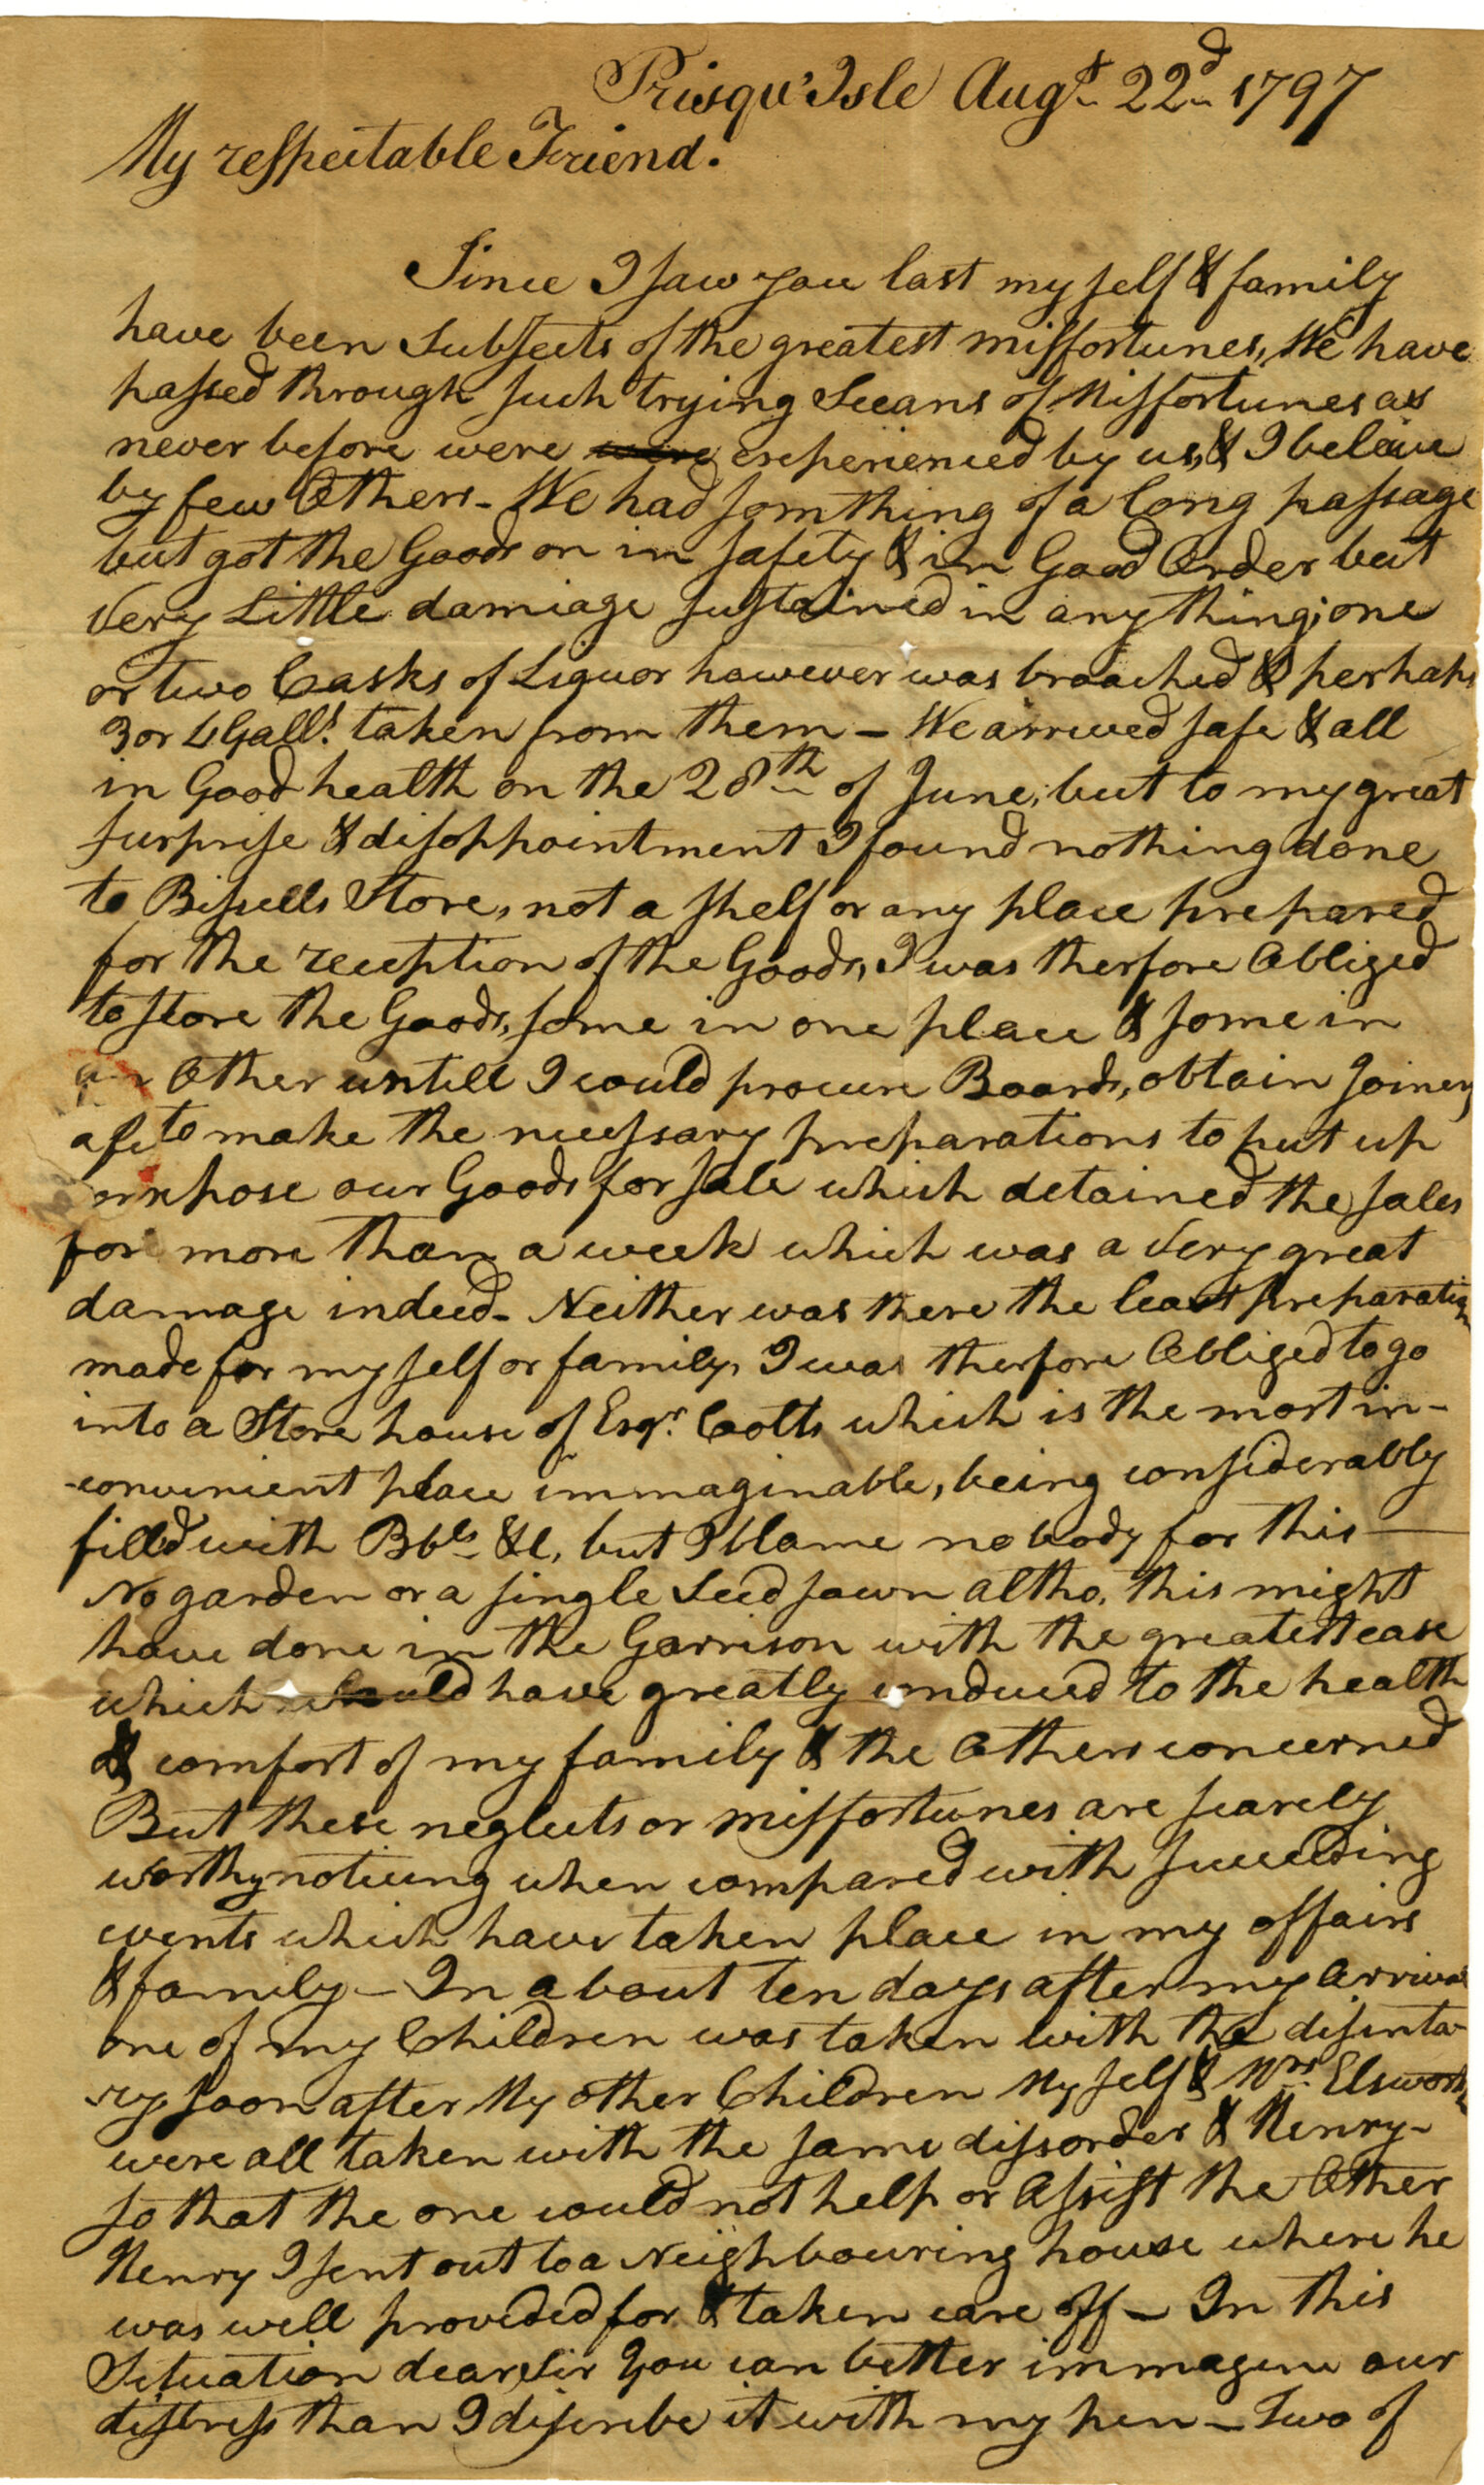 1797/08/22 Letter from Daniel Ellsworth to John Wyles, Sr.